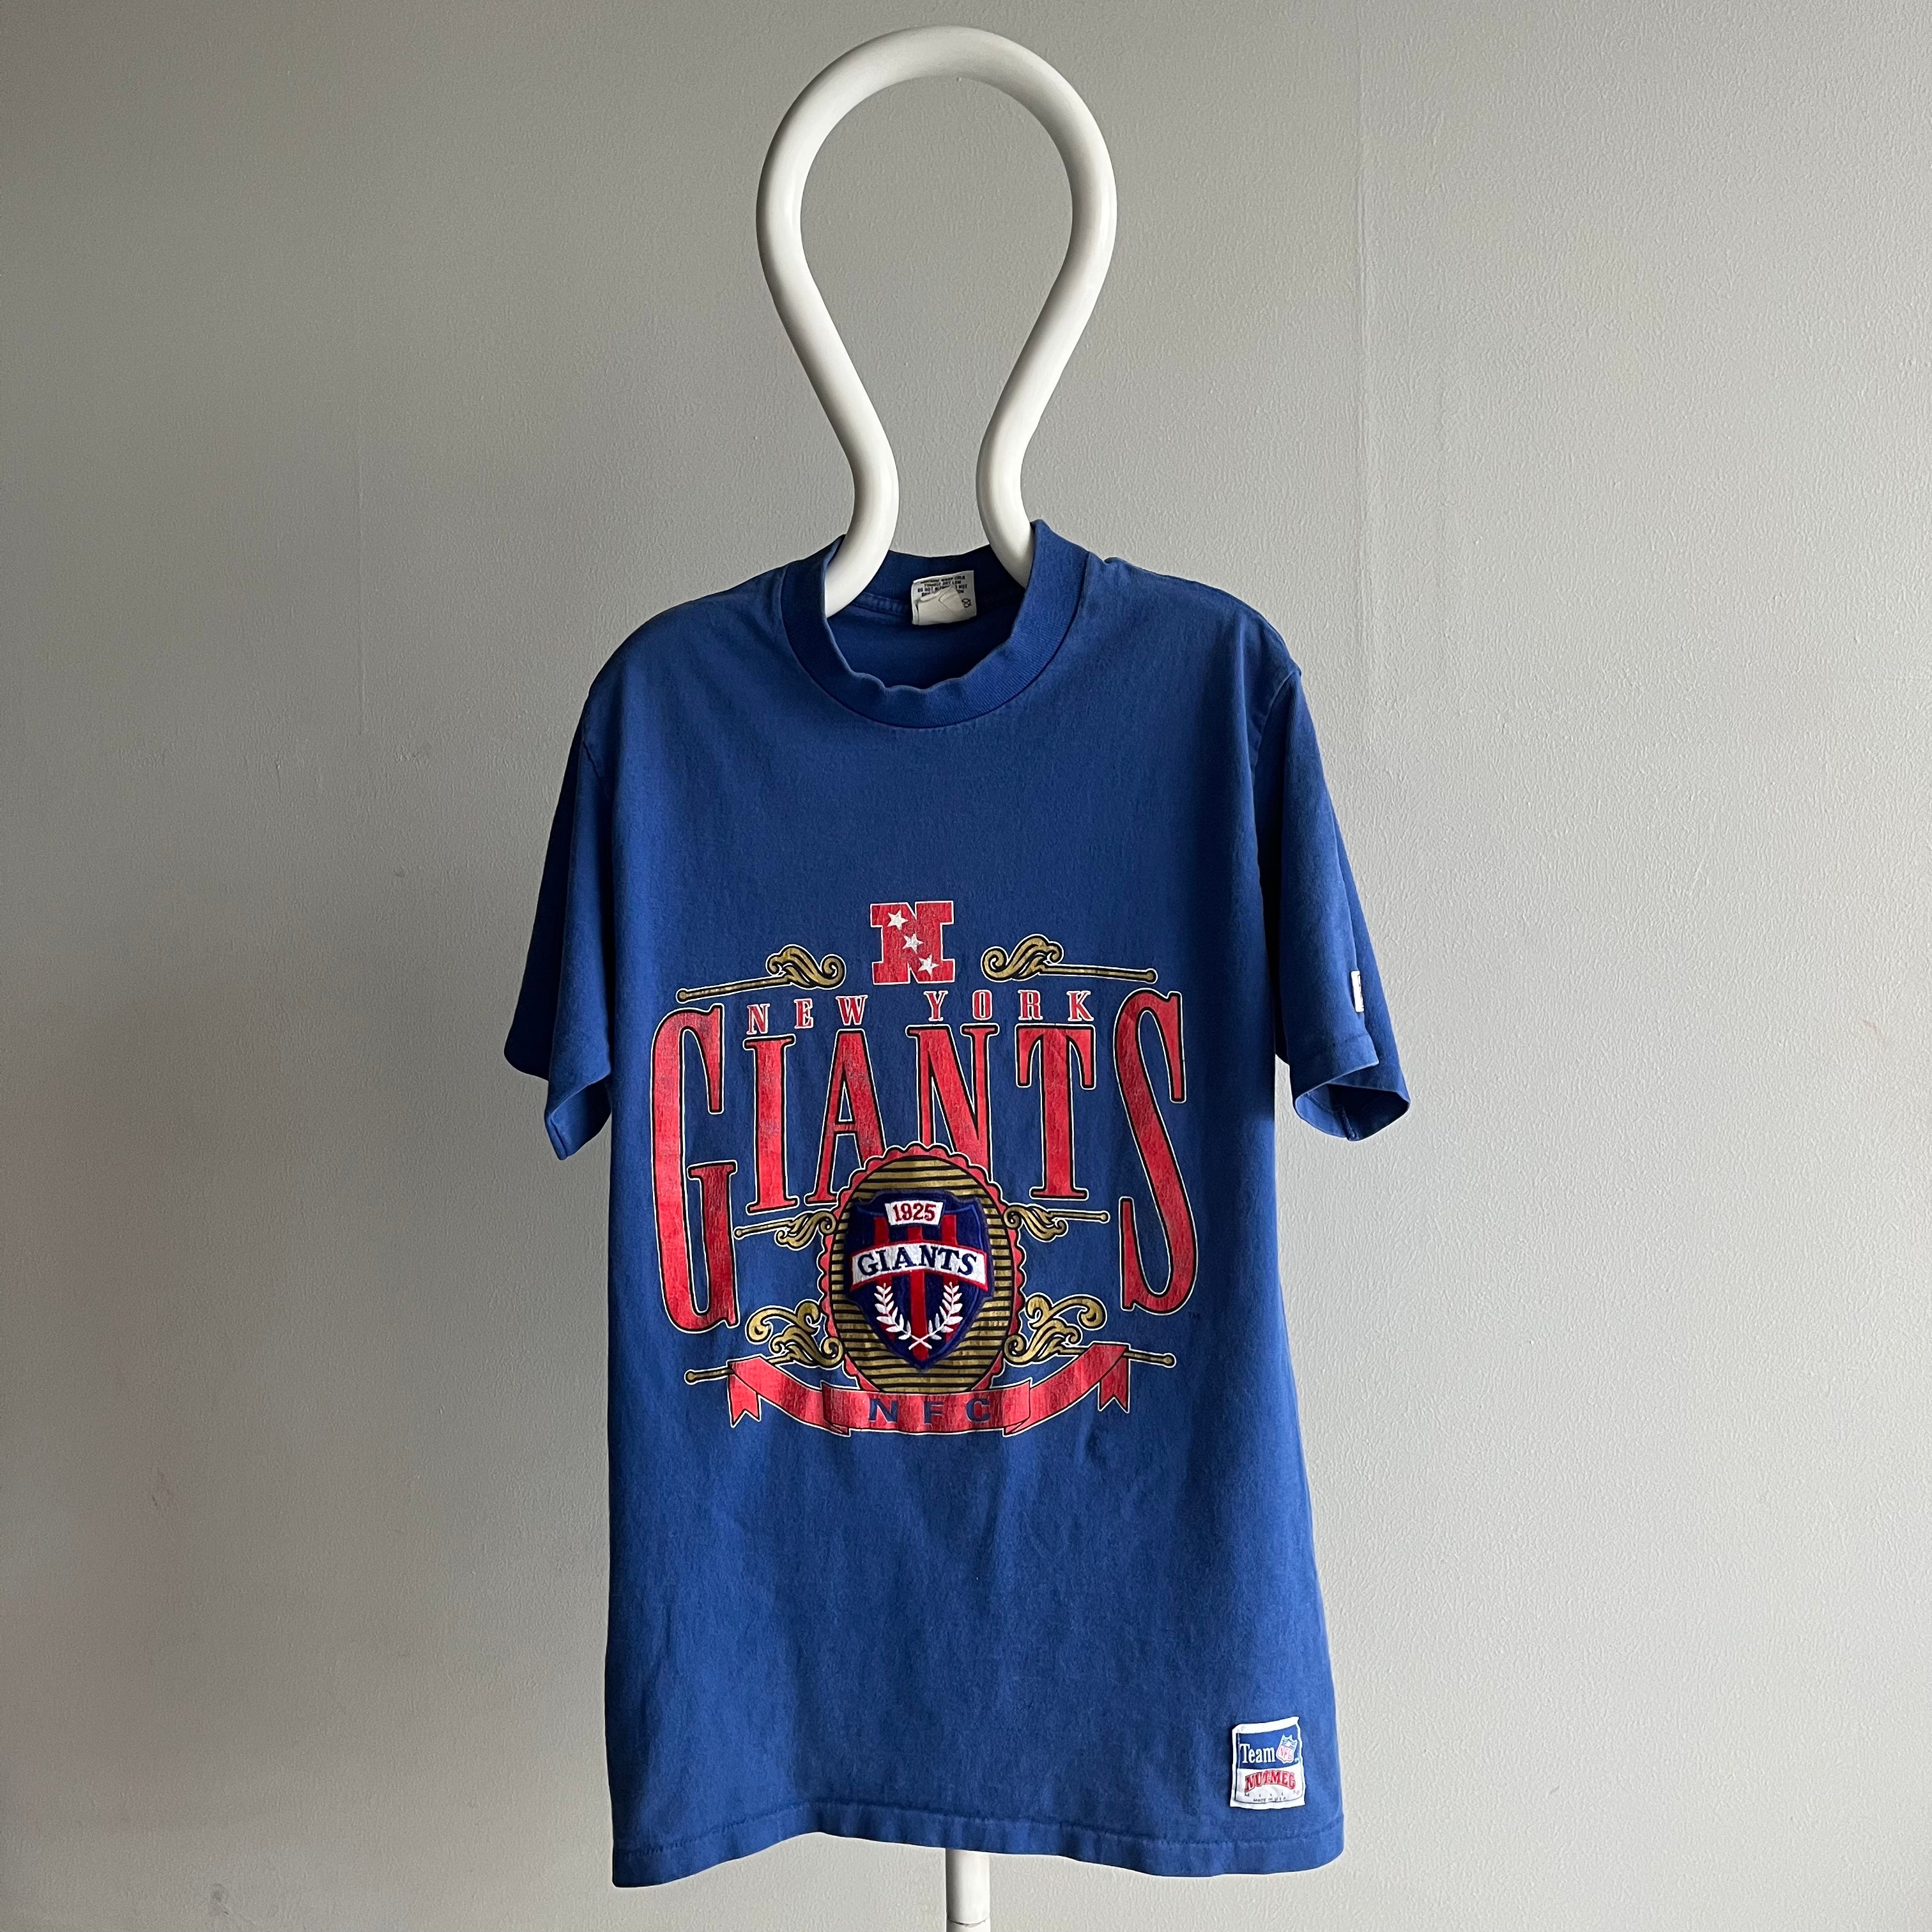 1980s New York Giants T-Shirt